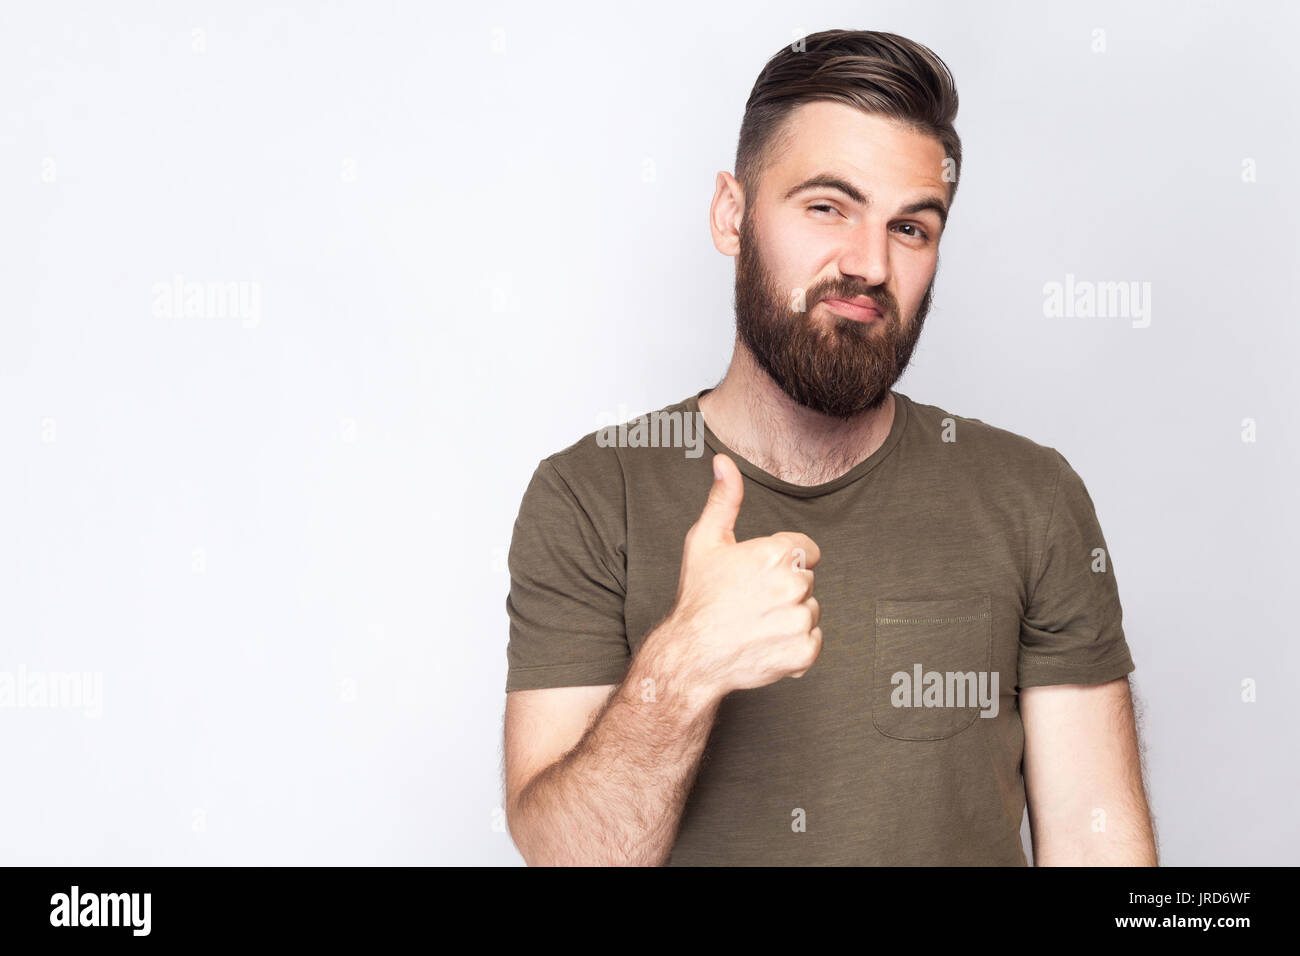 Portrait d'homme barbu satisfait avec Thumbs up et t-shirt vert foncé à l'arrière-plan gris clair. studio shot. Banque D'Images